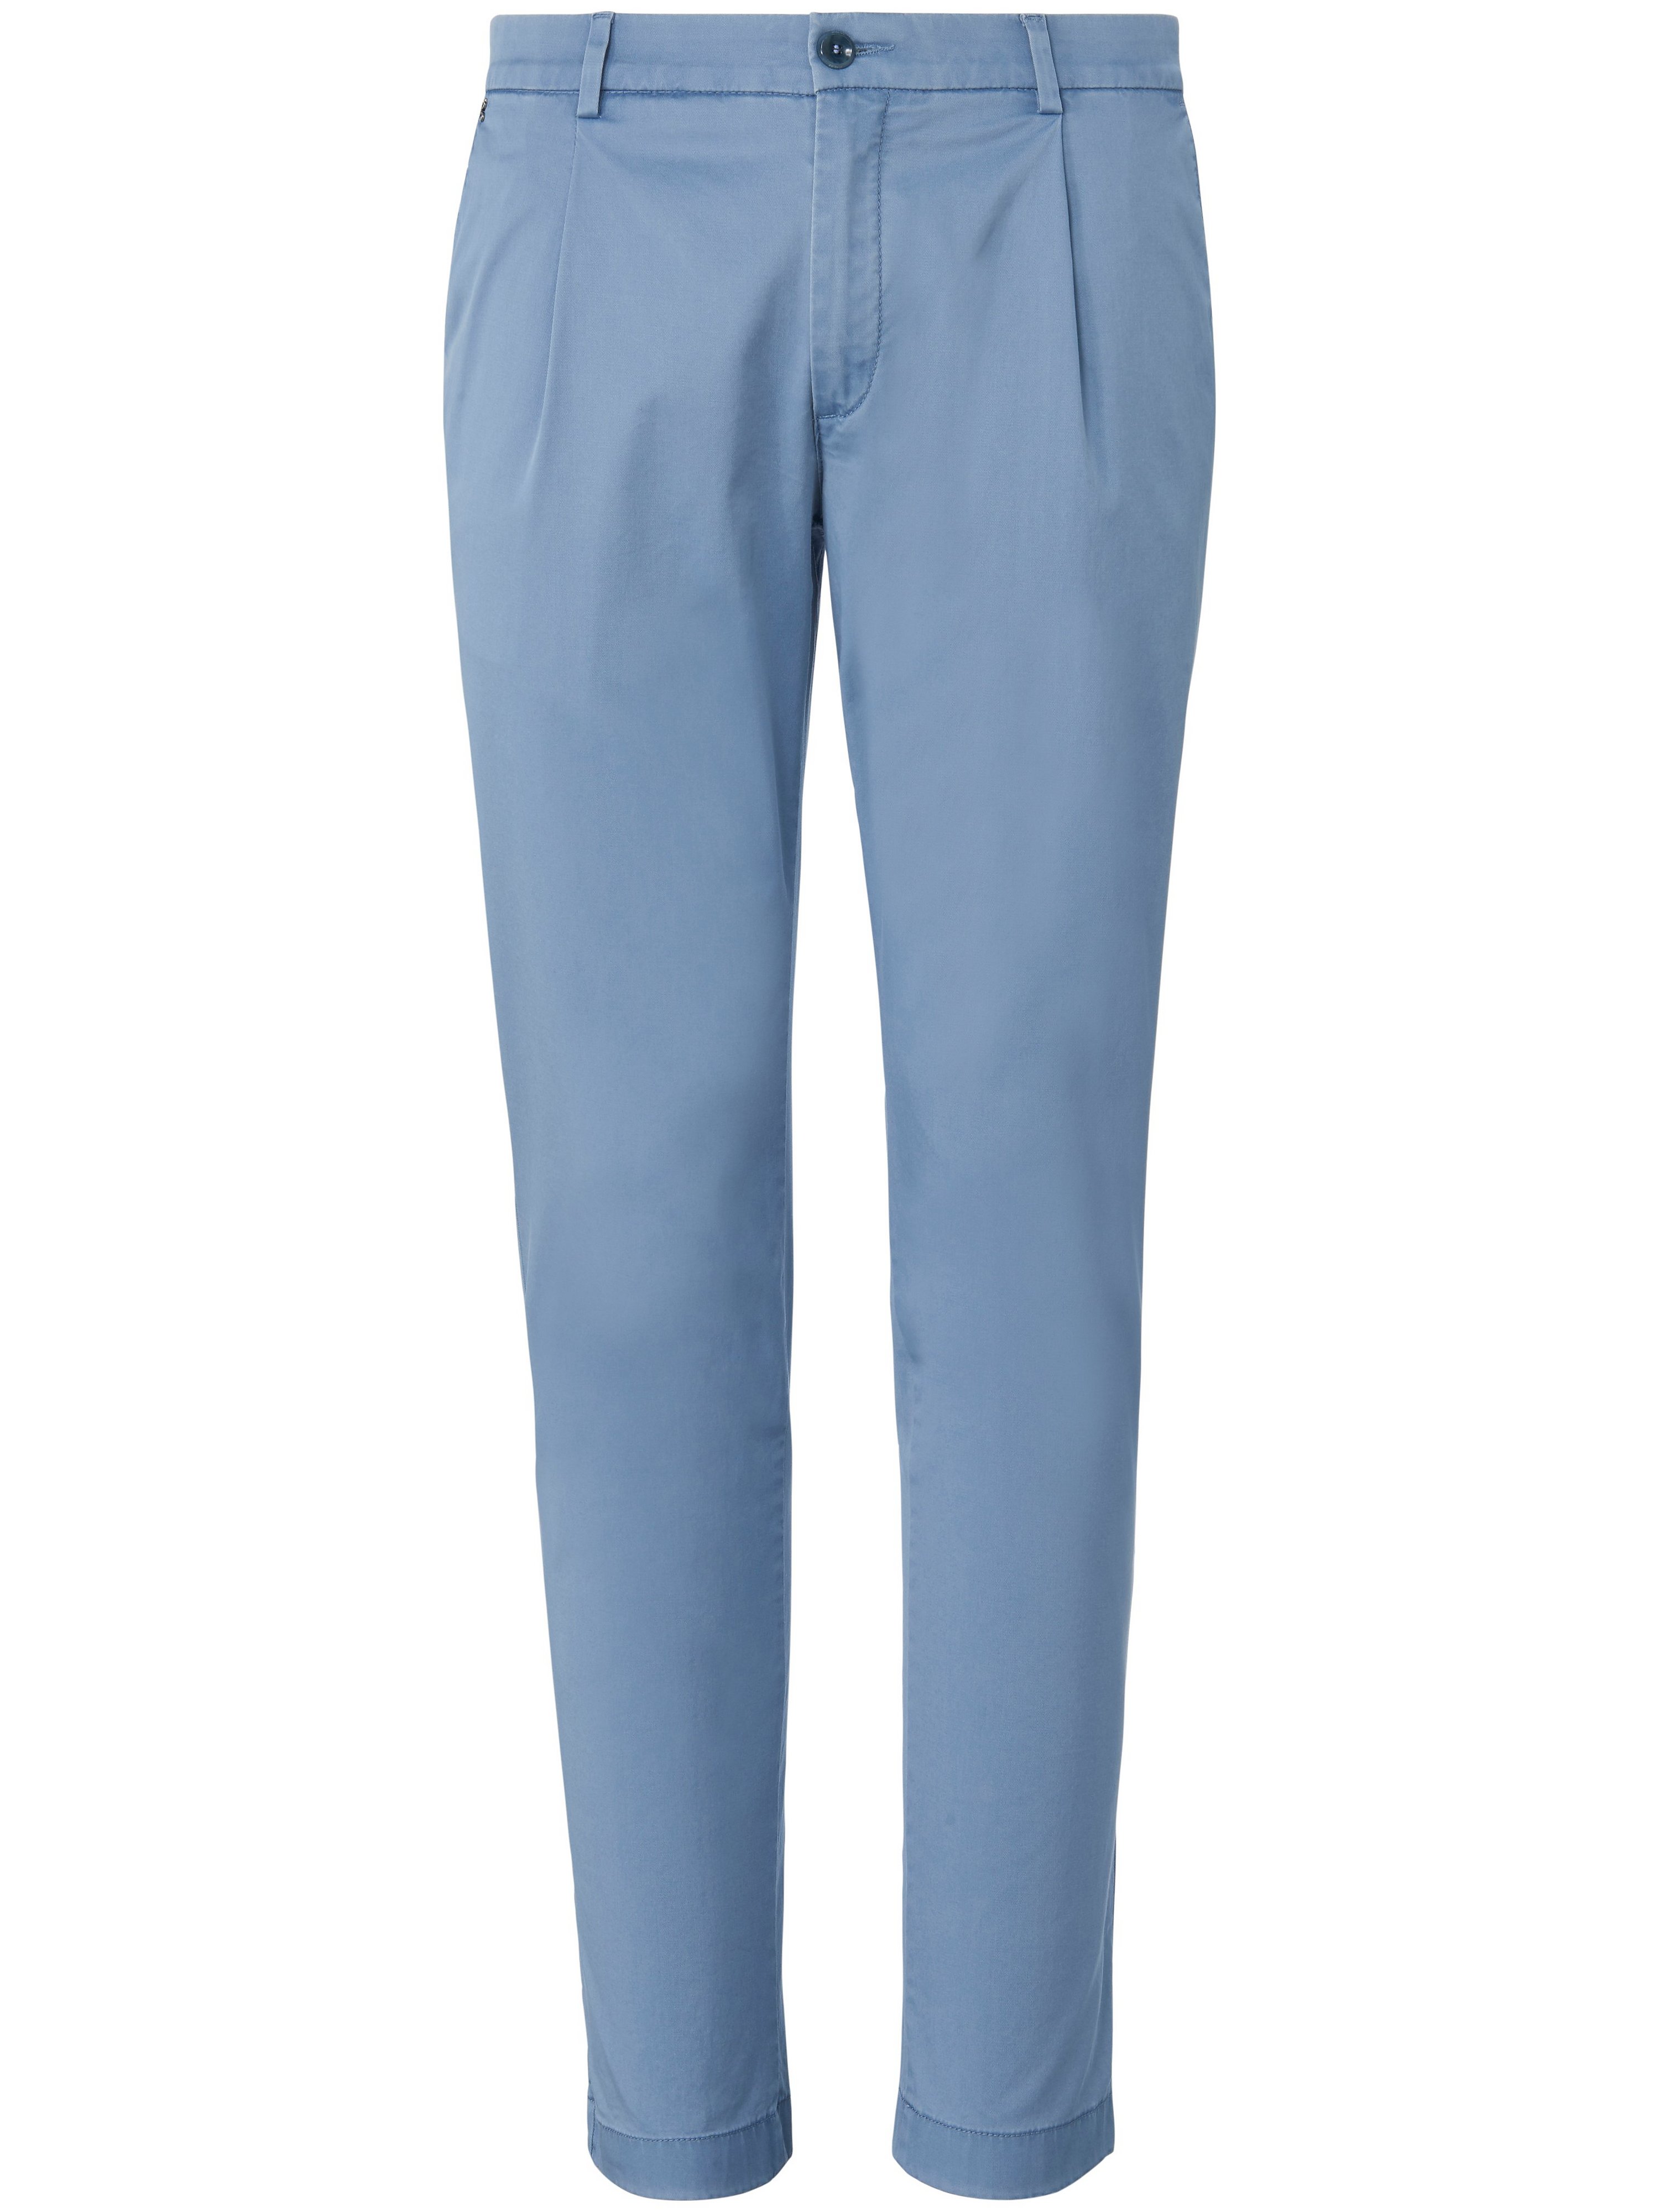 Le pantalon à pinces modèle Sergio  gardeur bleu taille 26